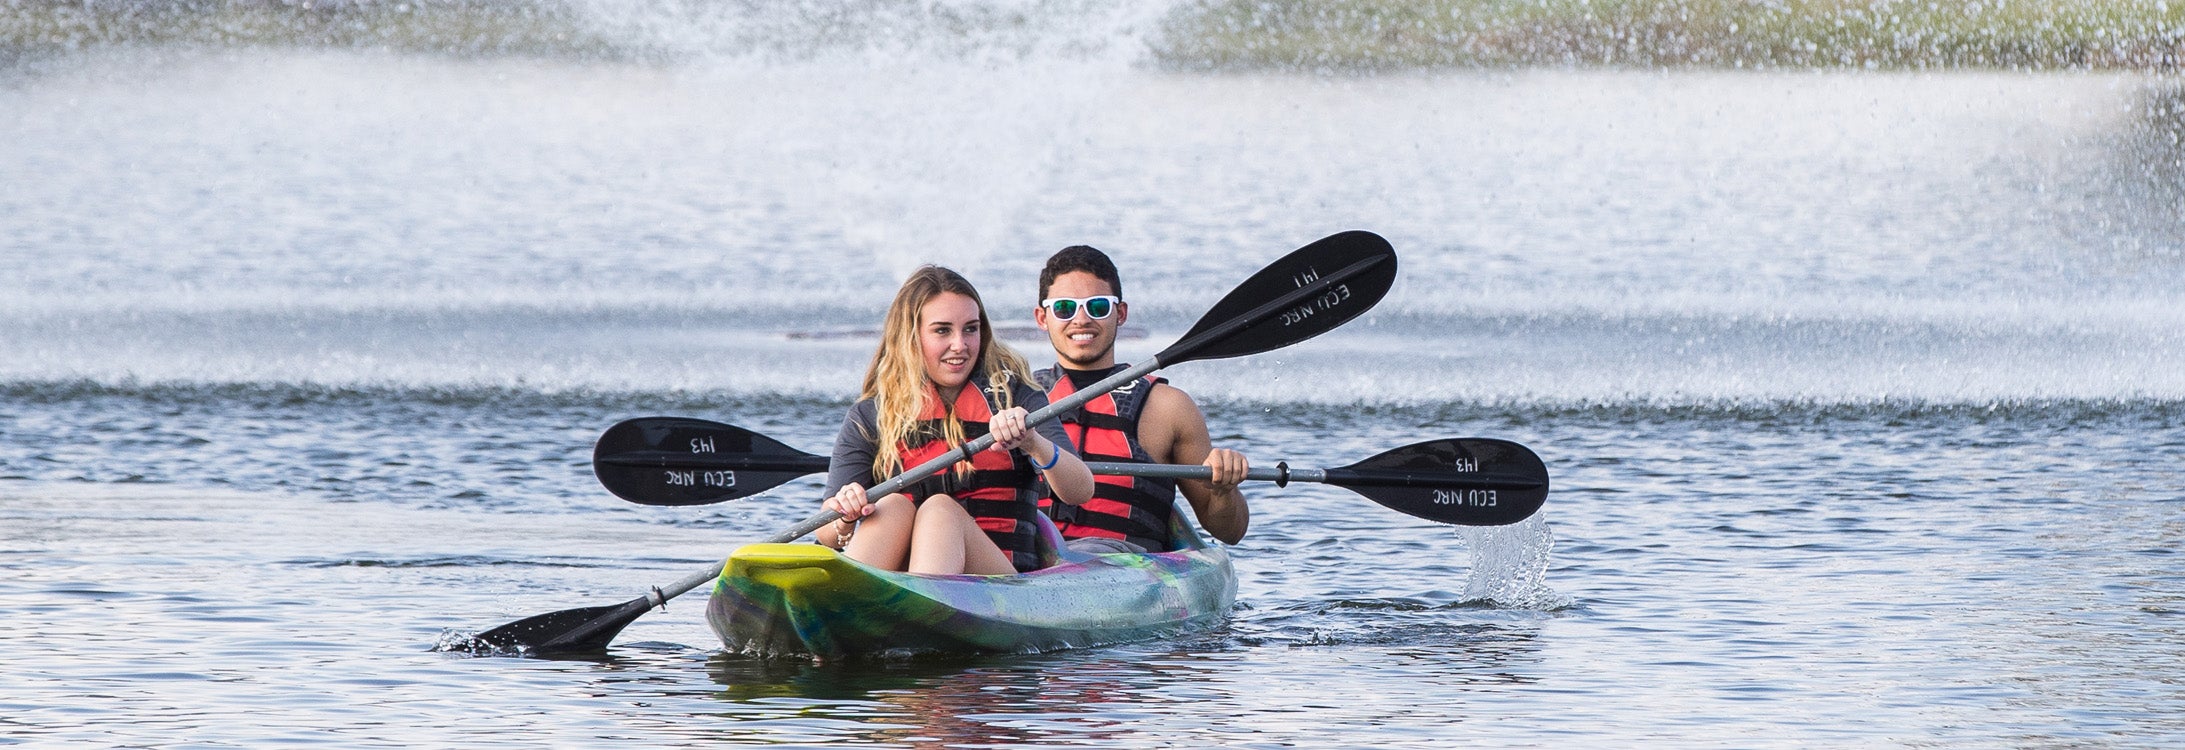 Students Kayaking